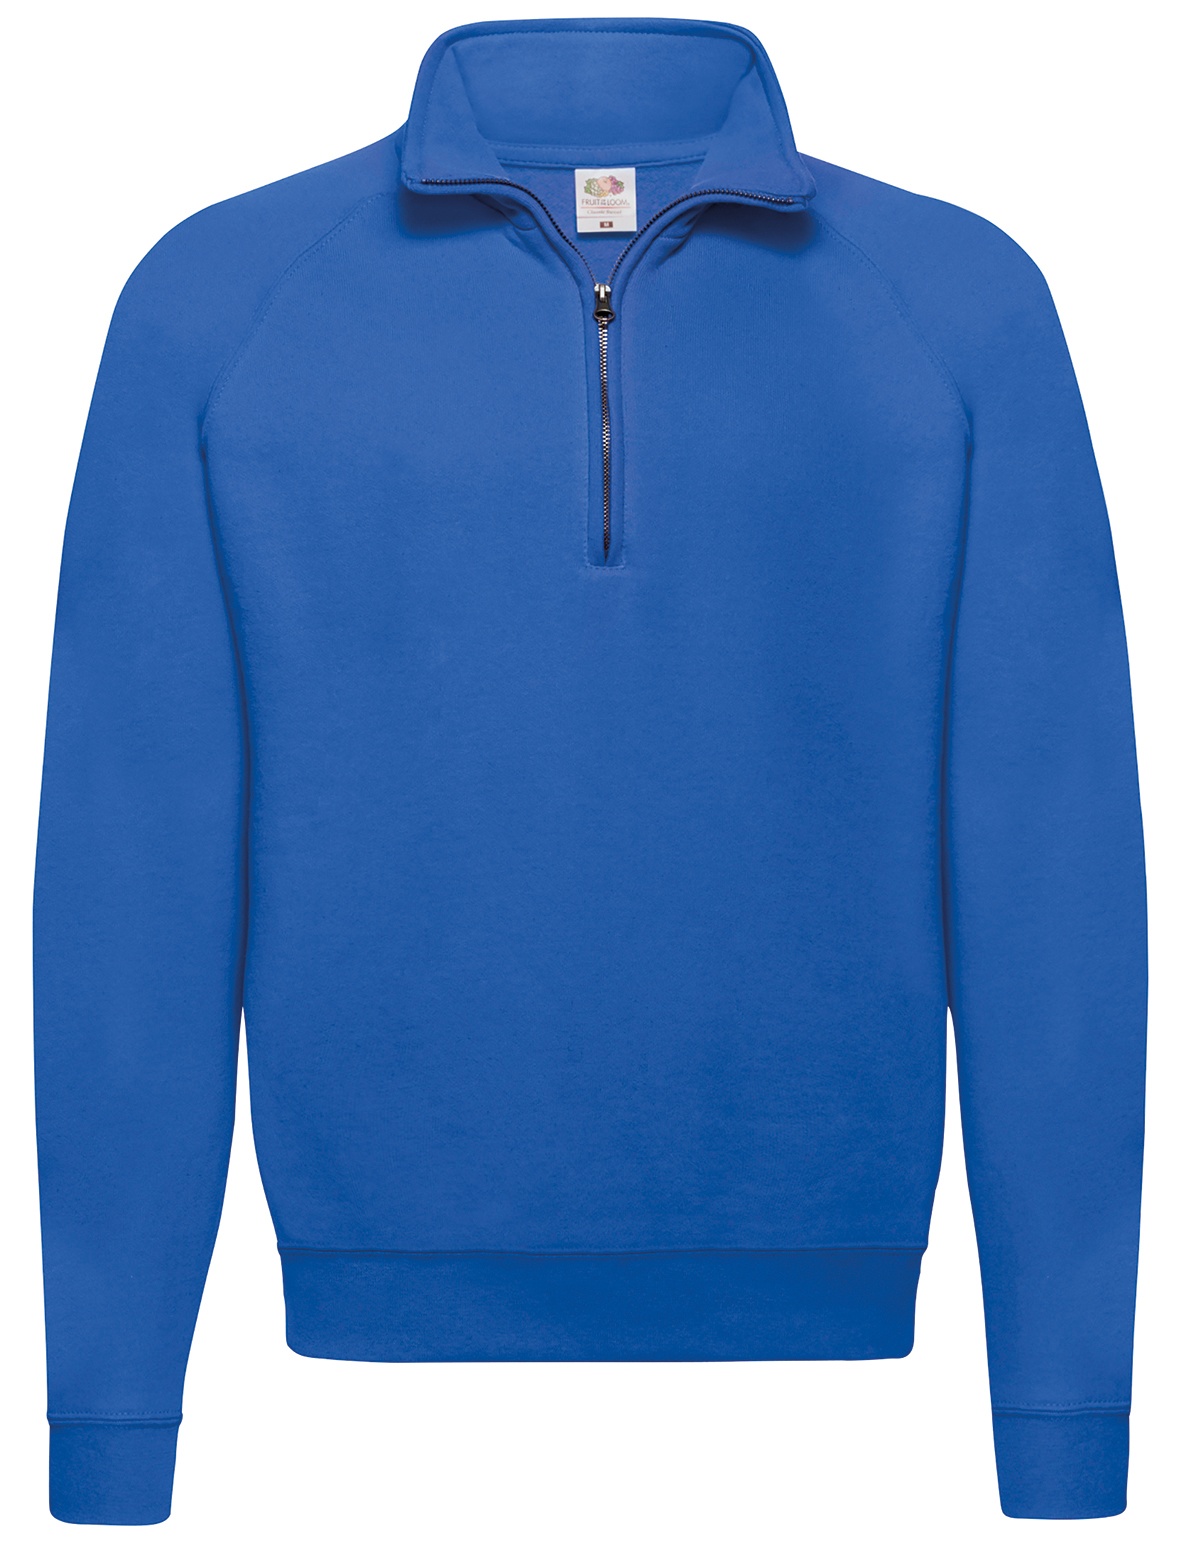 CLASSIC ZIP NECK SWEAT - Herren Sweatshirt mit Reißverschluss, royal, L